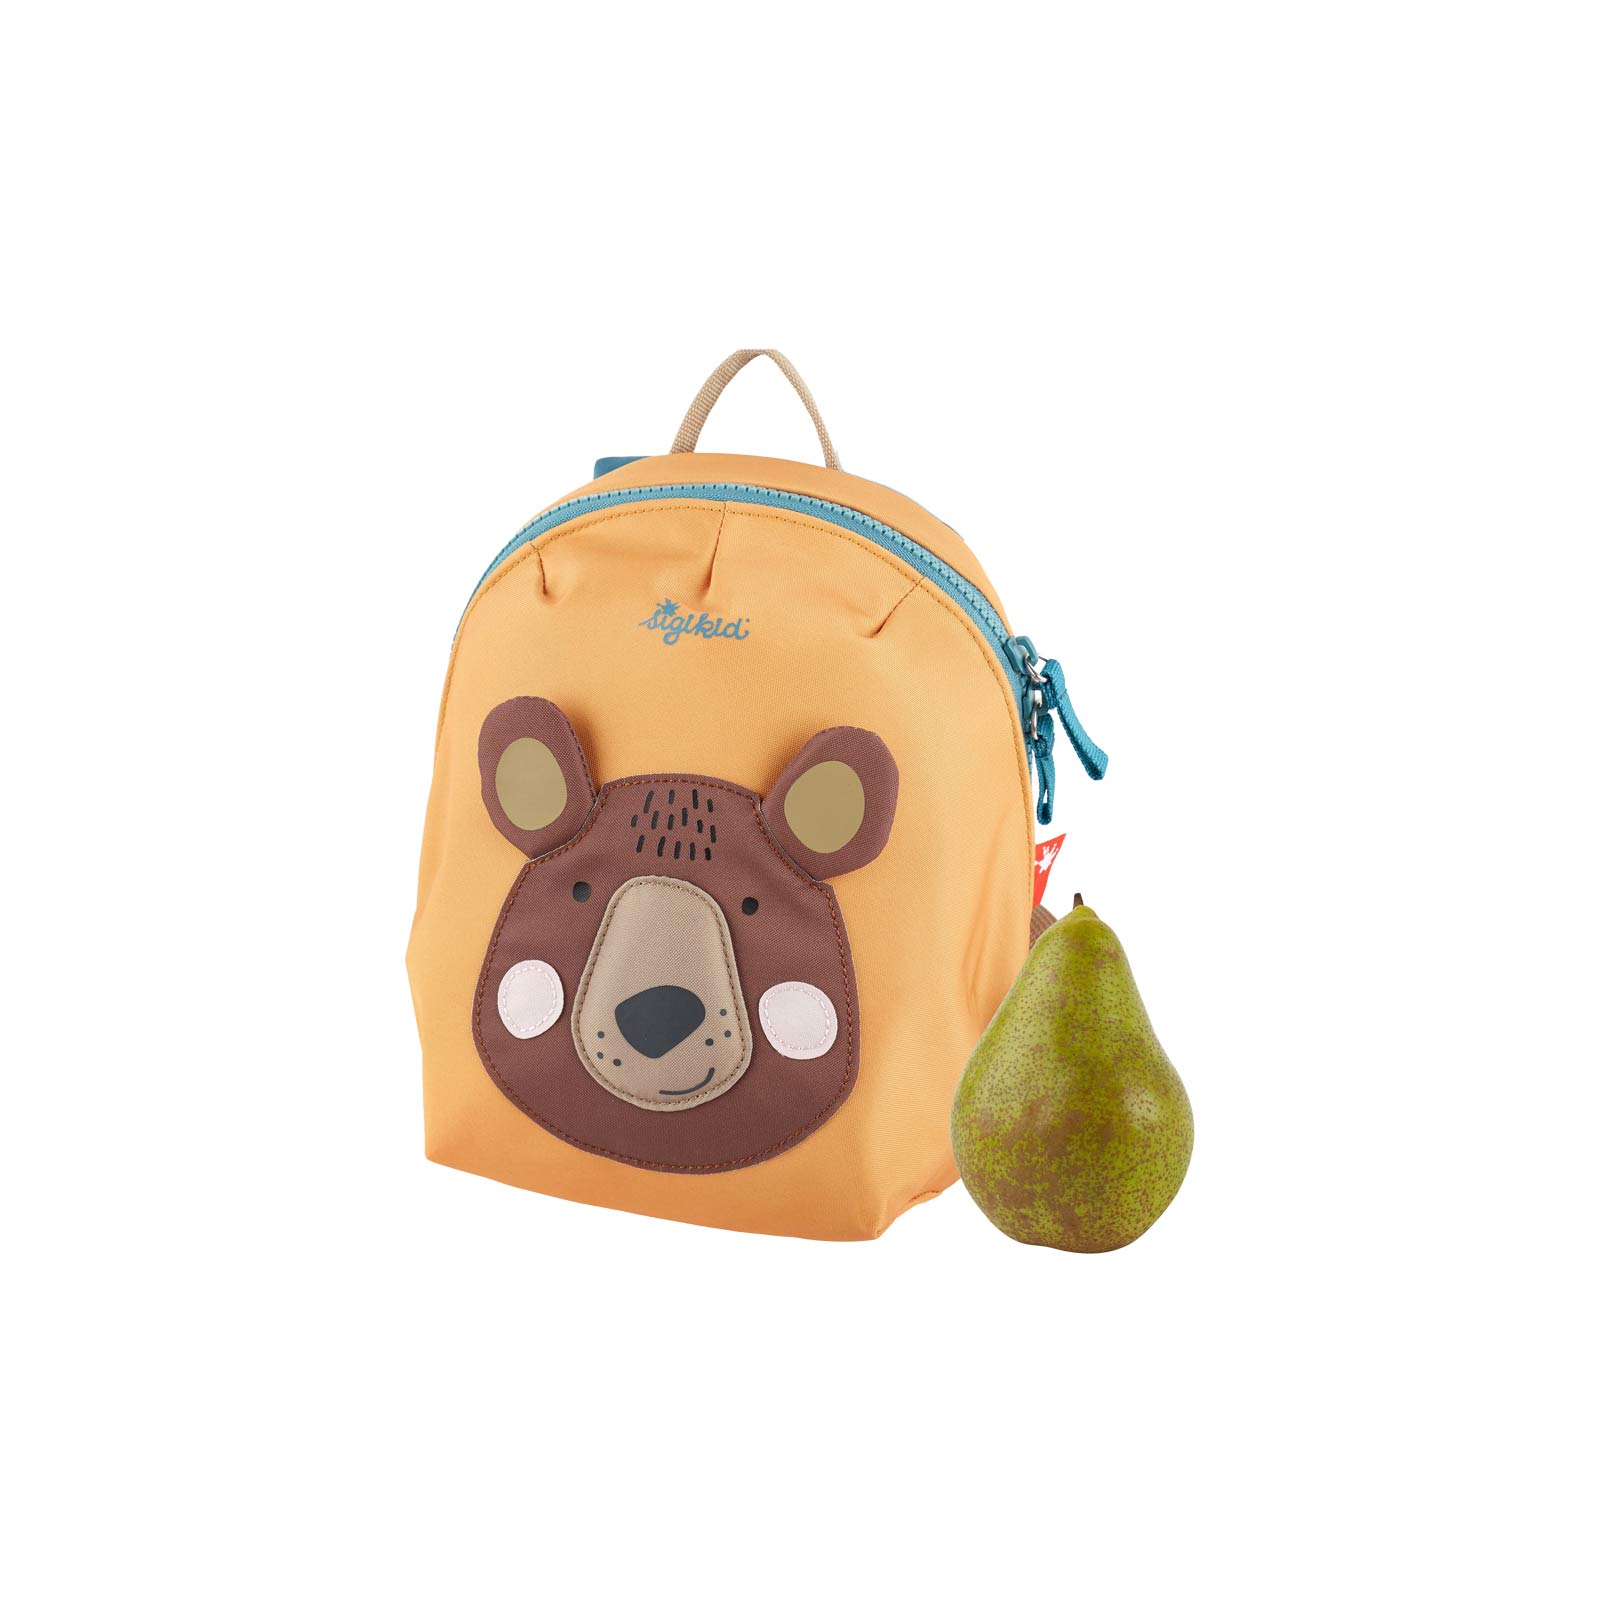 Sigikid Kinder Minirucksack Bär orange - A 